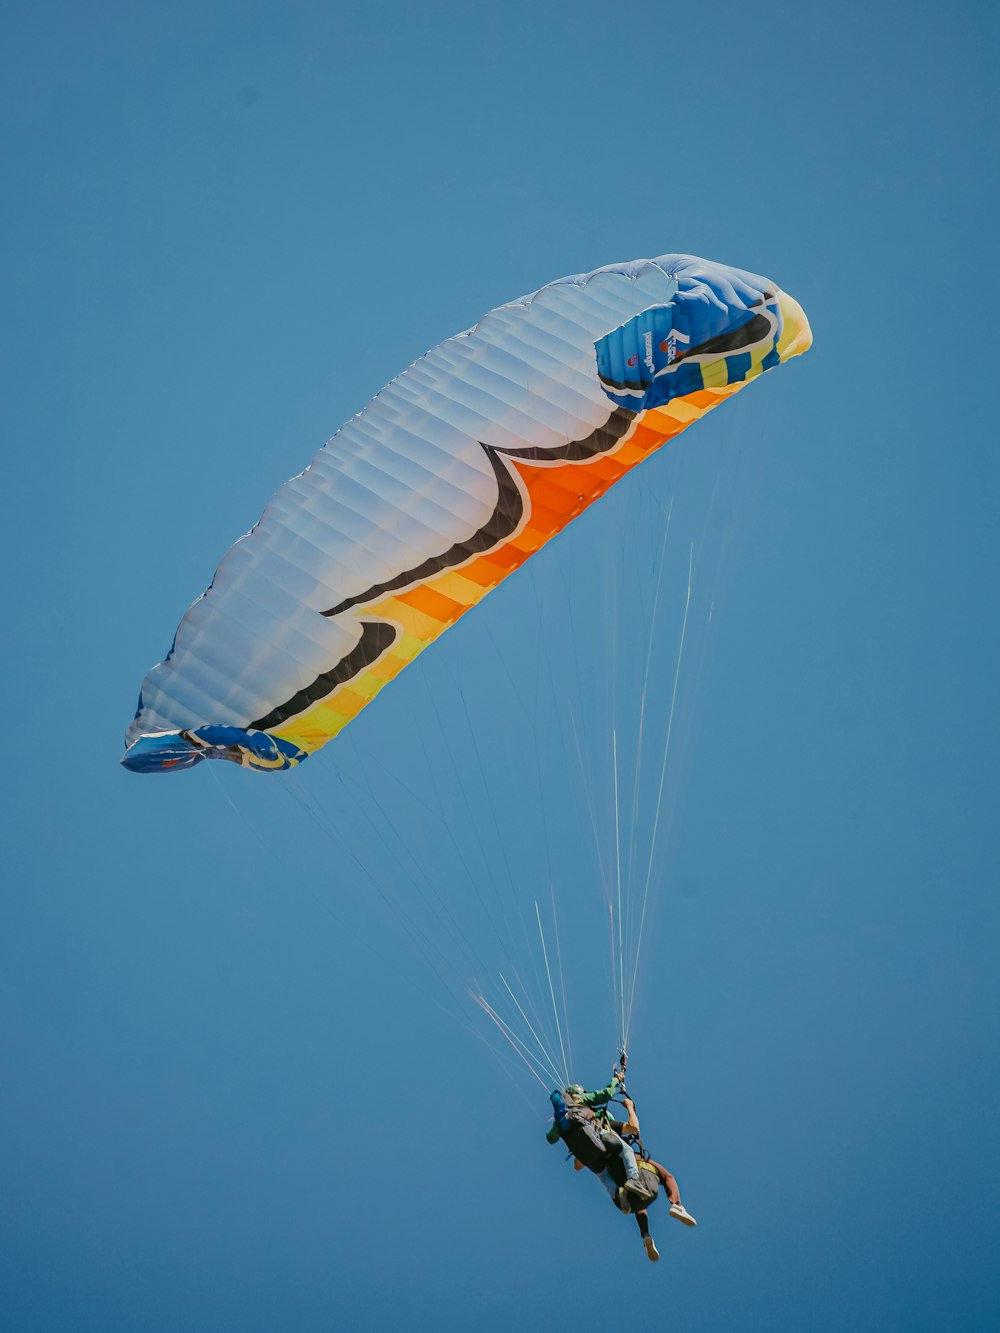 Deux personnes font du parachute ascensionnel dans le ciel bleu